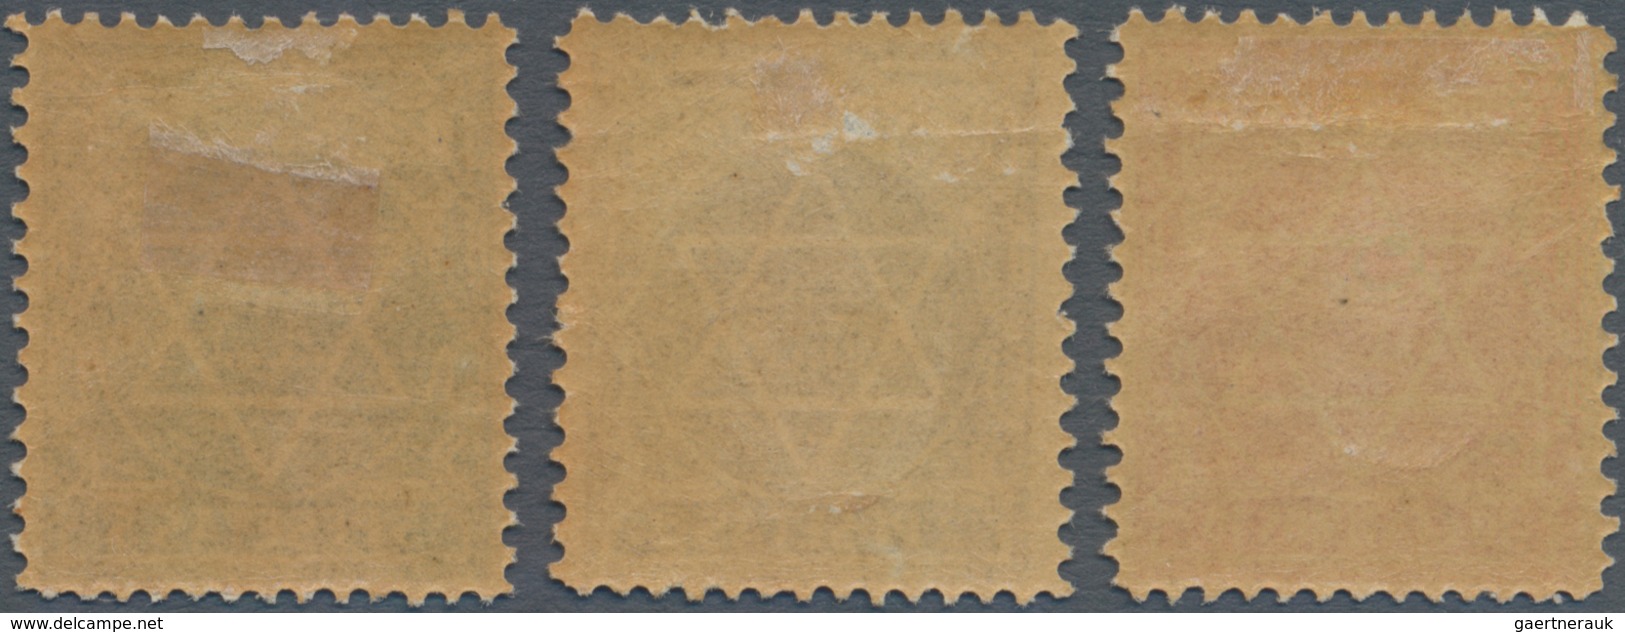 Marokko: LOCALS: TANGER A ARZILA, 10c., 2p. And 5p., Three Values Mint Original Gum With Hinge Remna - Unused Stamps